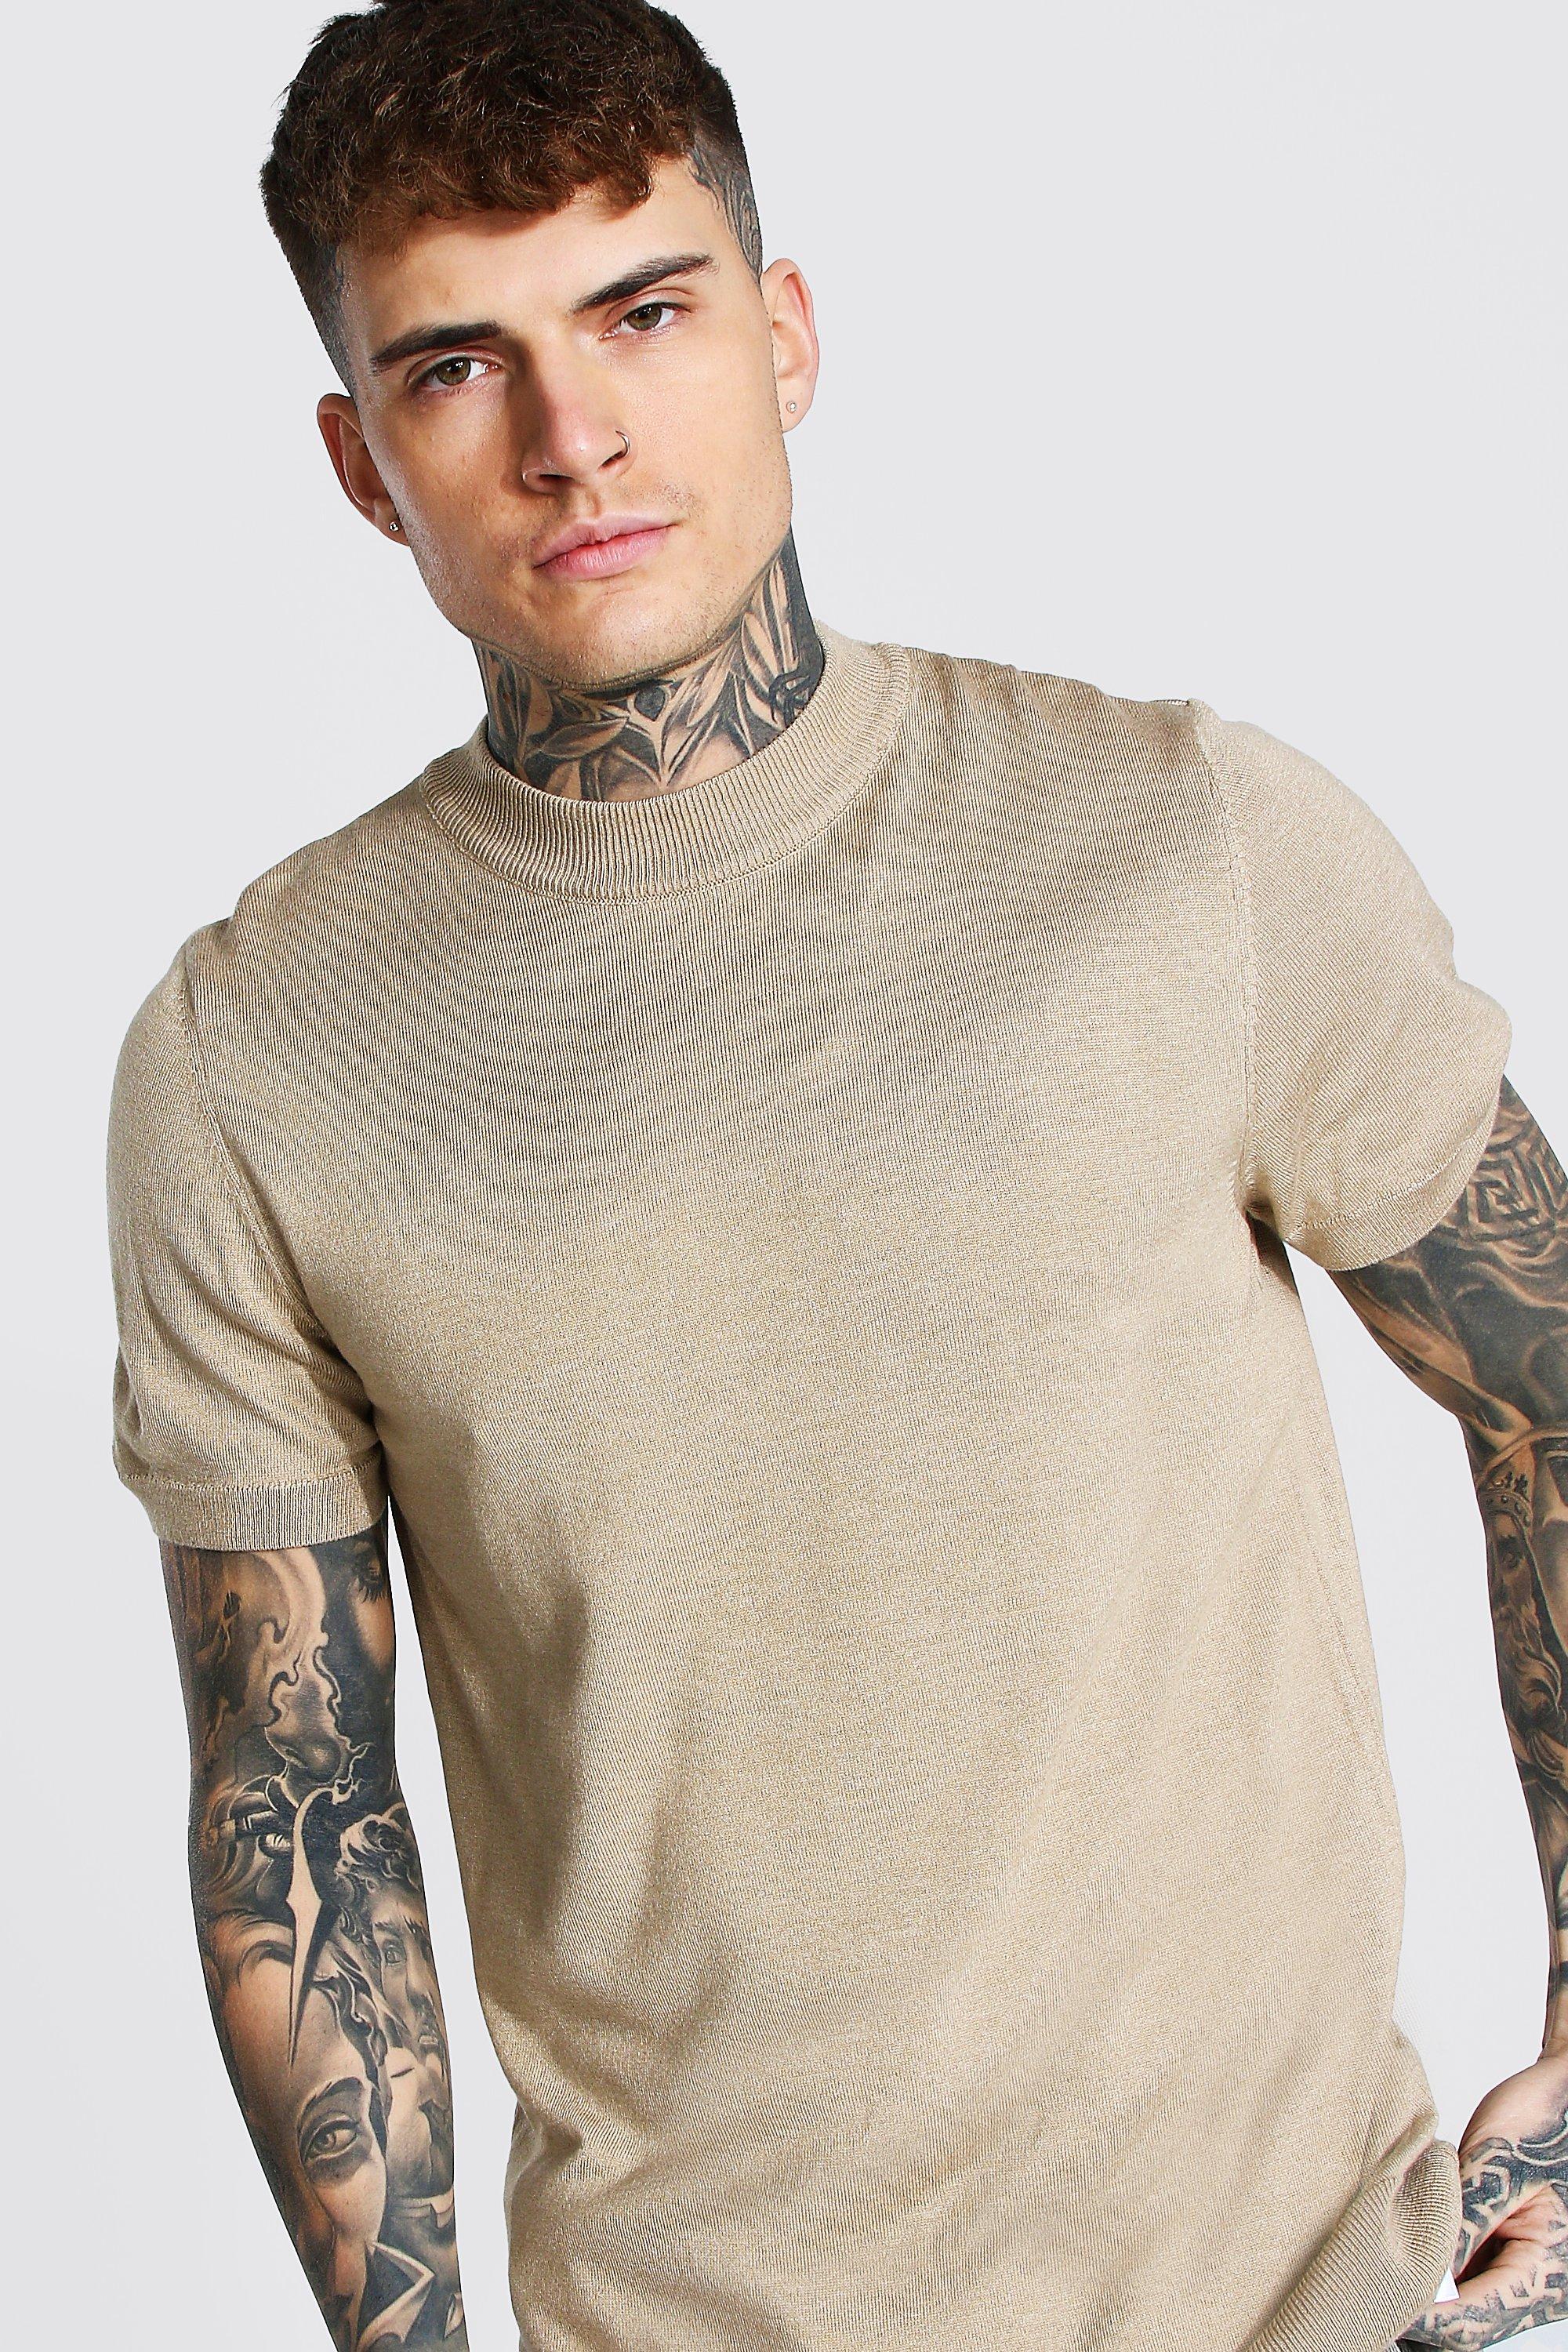 Las mejores ofertas en Cuello alto manga corta Camisetas para Hombres